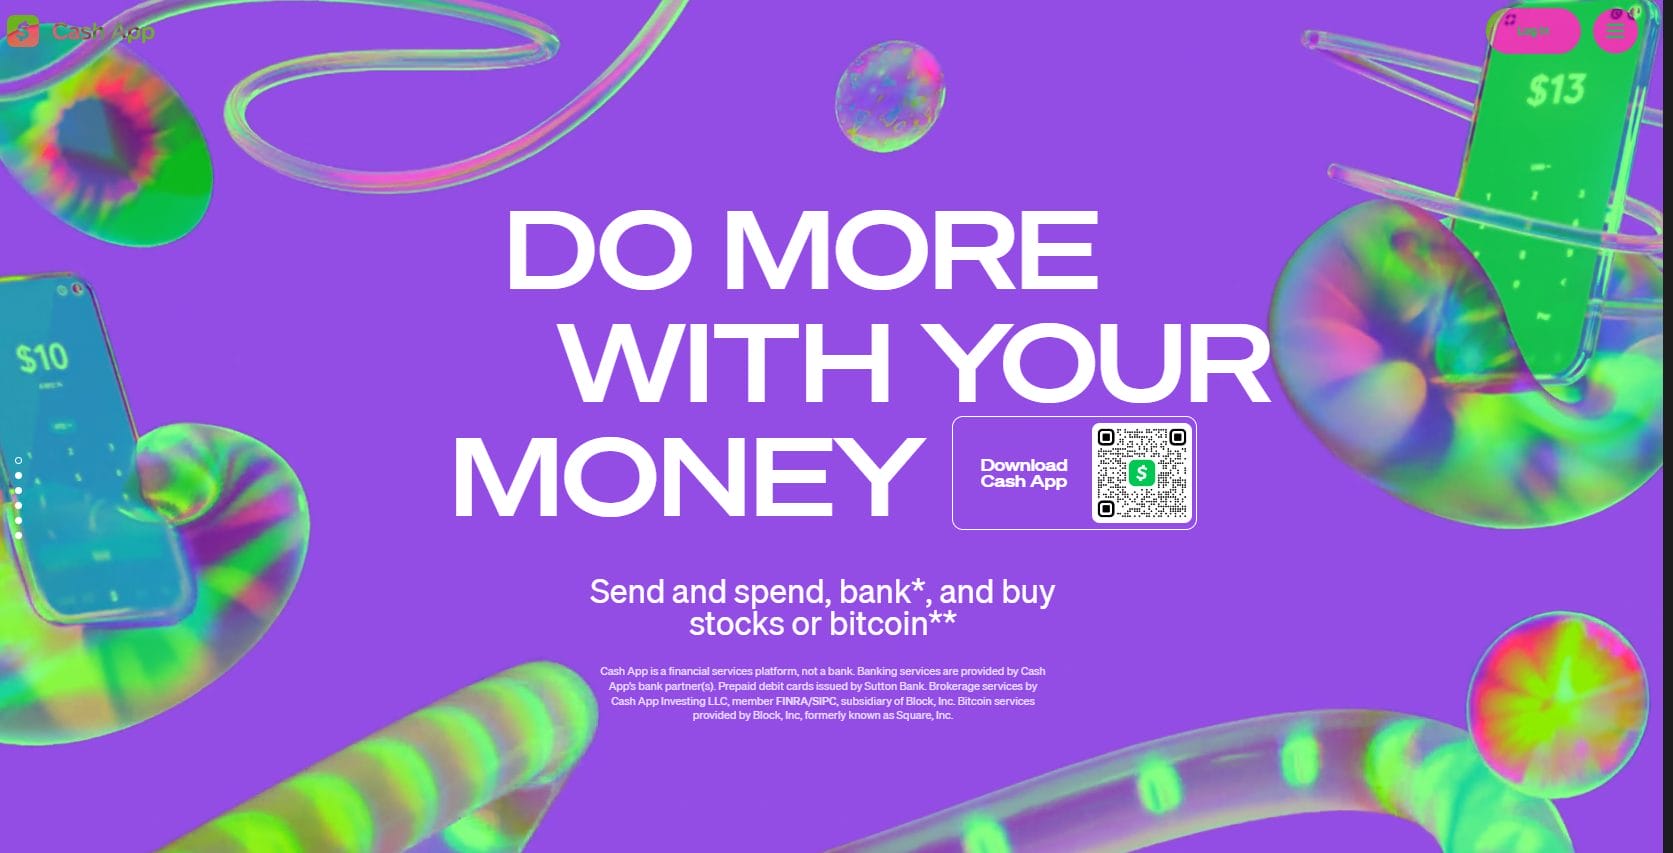 Cash App homepage